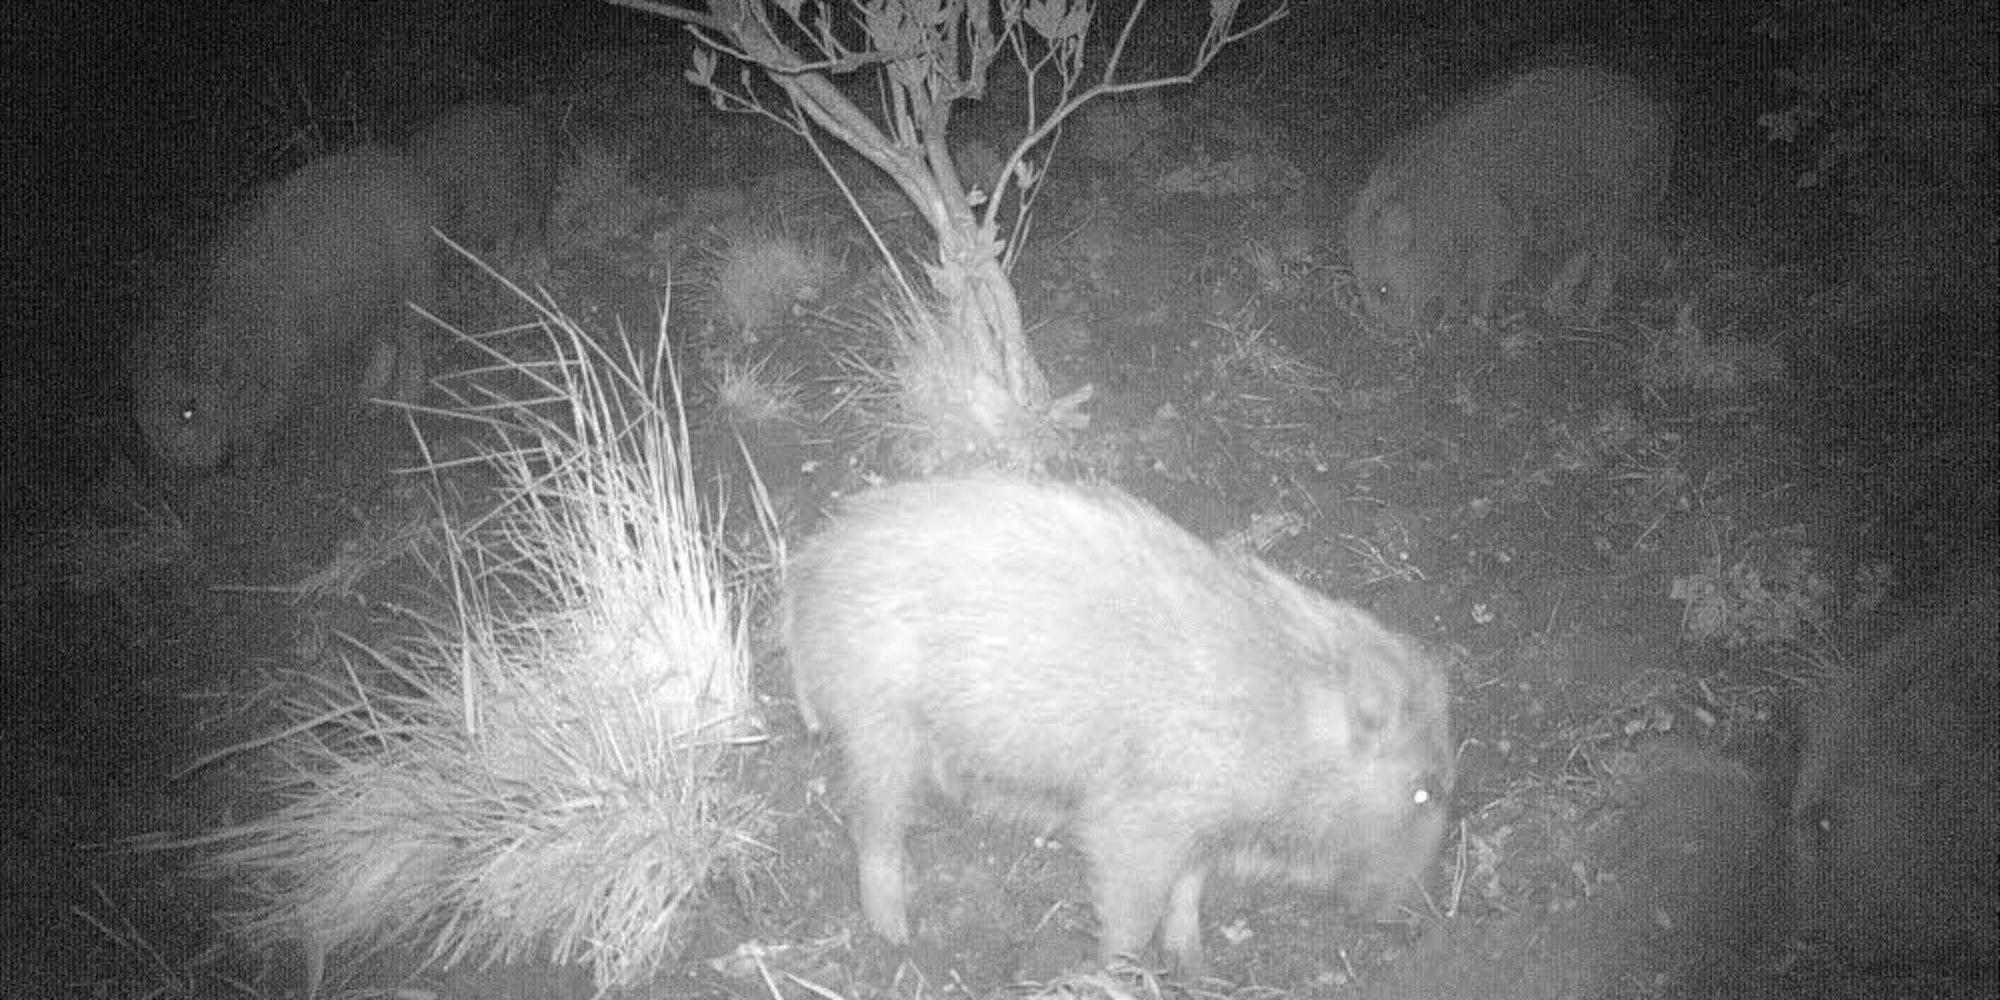 Eindeutiger Beweis: Wildschweine haben nachts den Garten der Amers auf der Suche nach Fressbarem mit ihren Rüsseln umgepflügt.